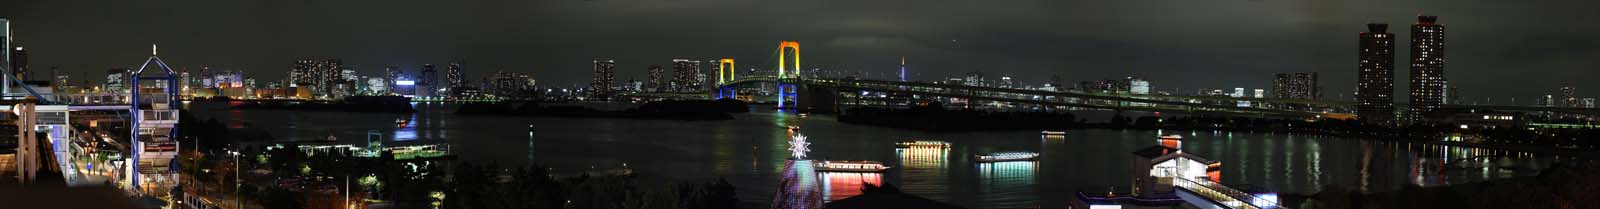 photo, la matire, libre, amnage, dcrivez, photo de la rserve,Une vue de la nuit d'Odaiba, pont, bijou, cours de la date, le bord de la mer a dvelopp le centre de ville rcemment